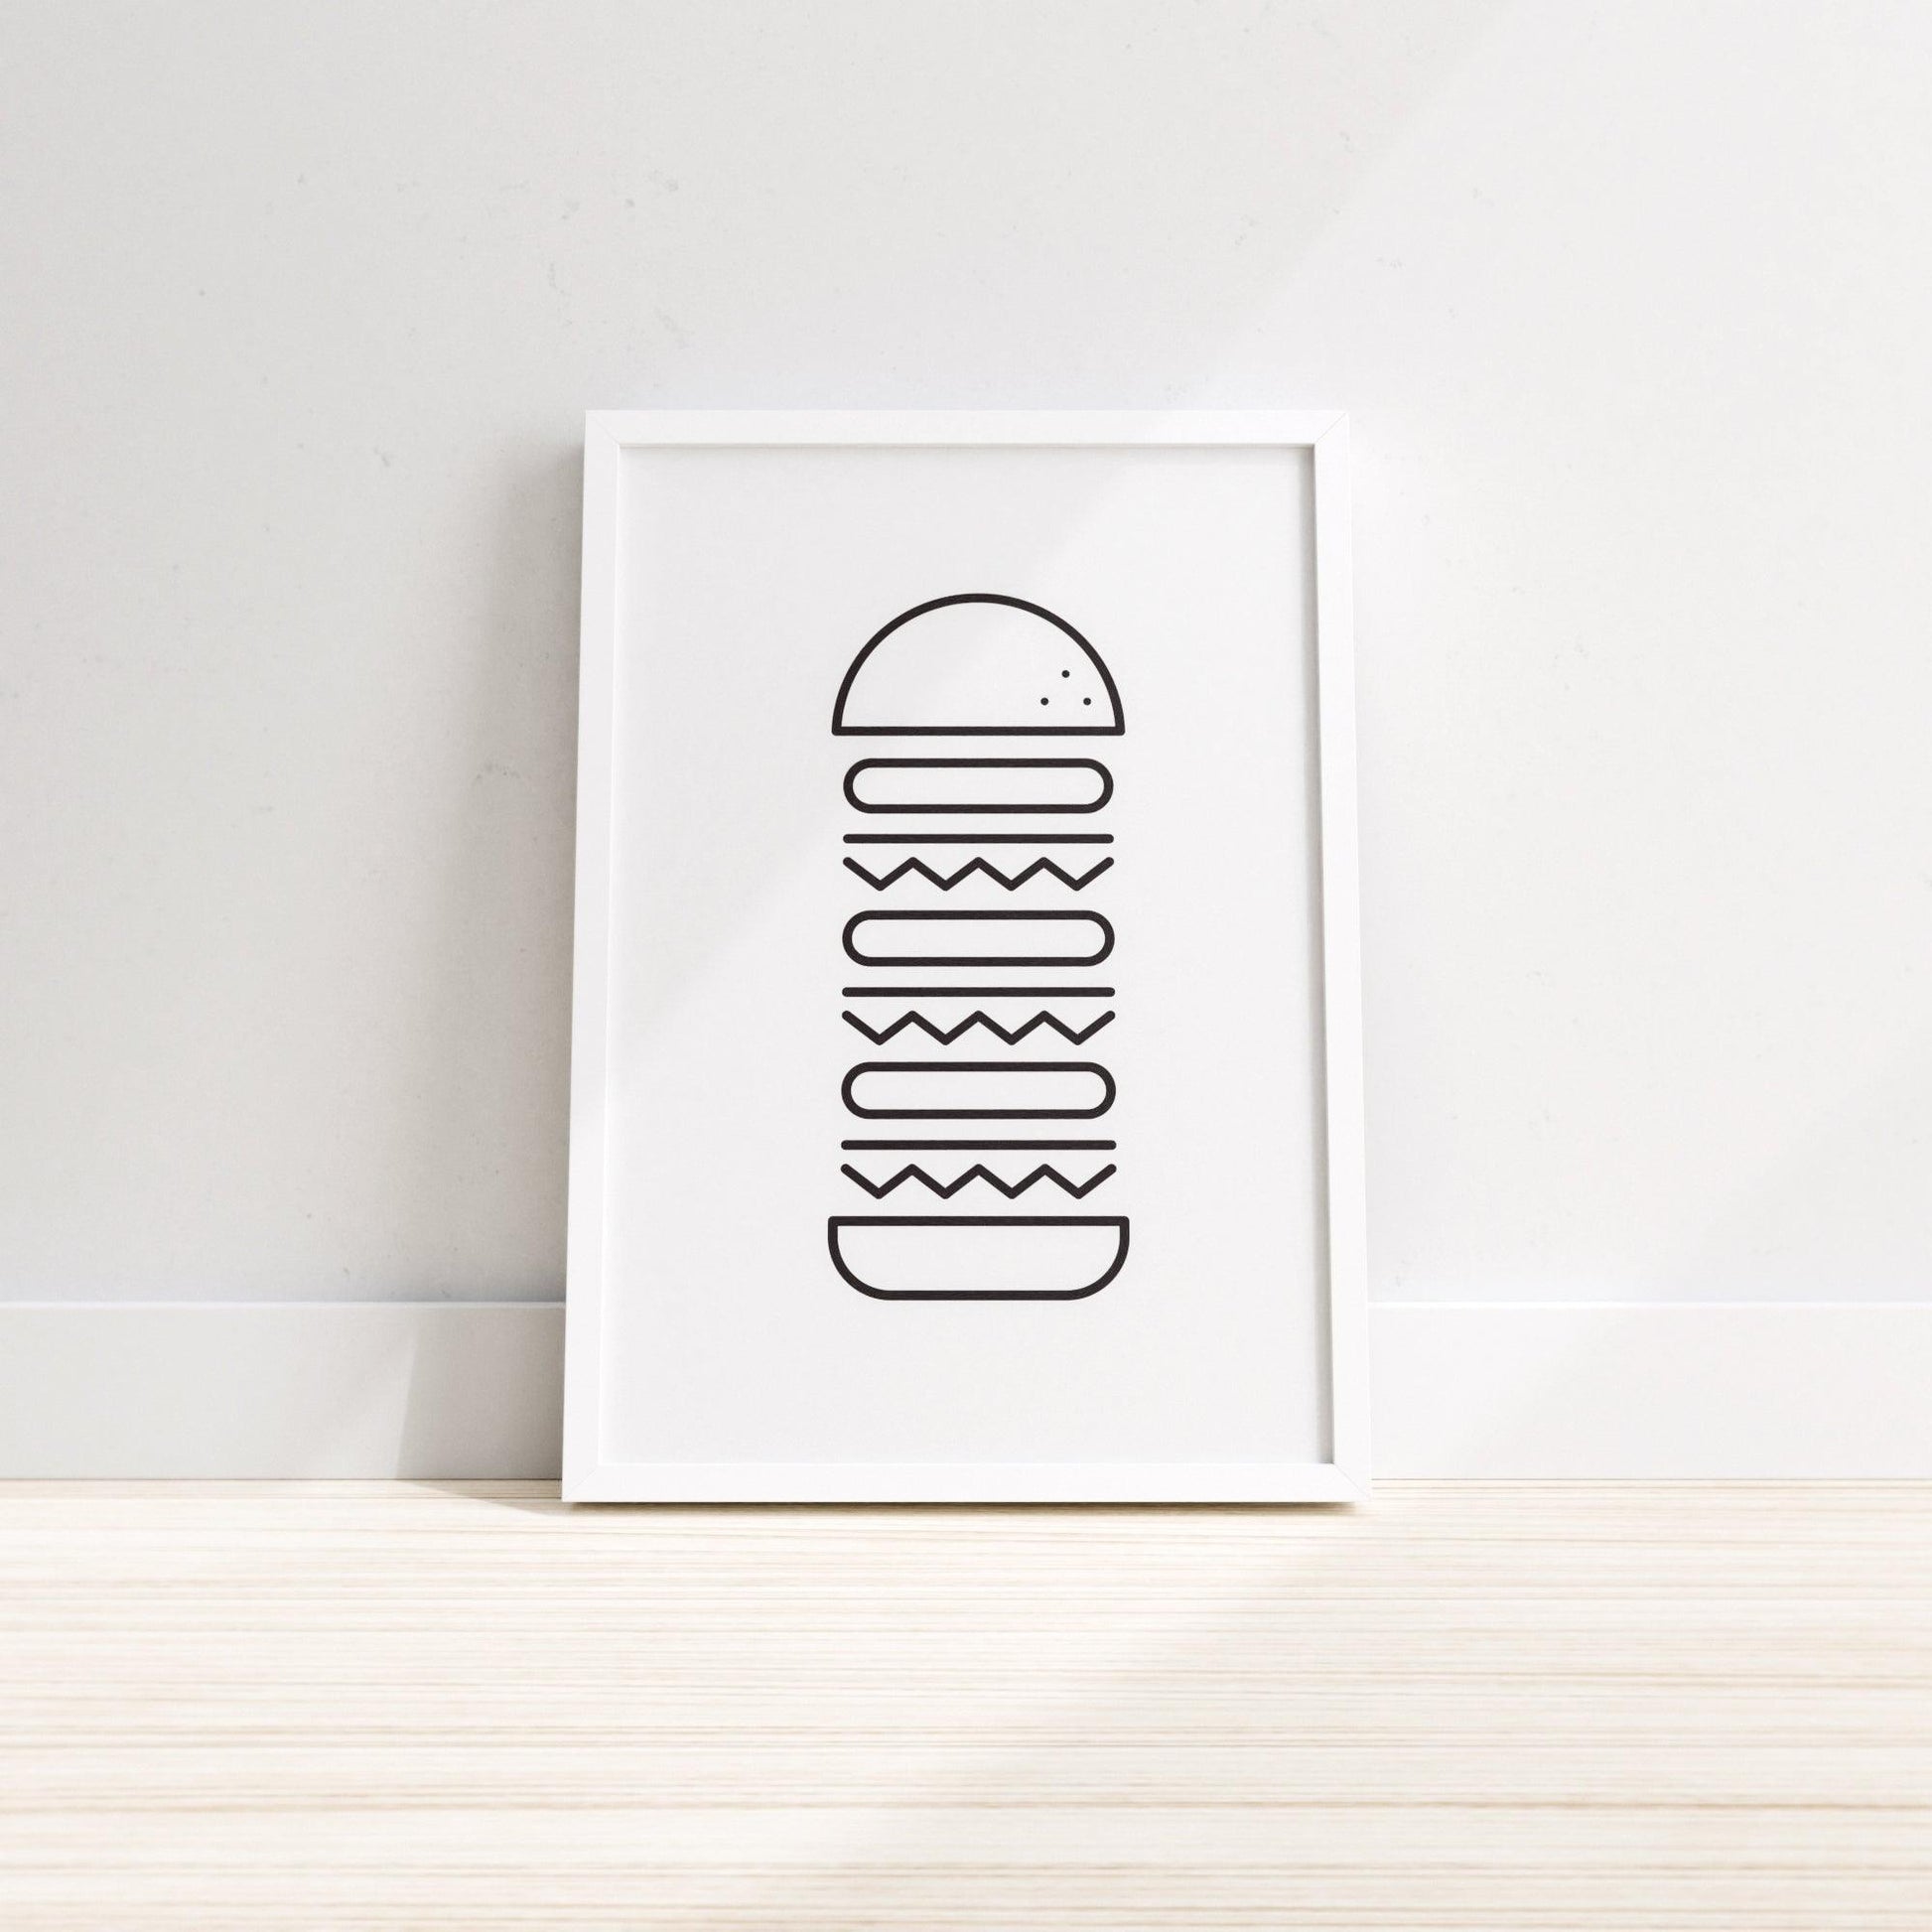 Hugeburger Burger Wall Print, Kitchen Wall Decor, Office Wall Print, Home Office wall decor